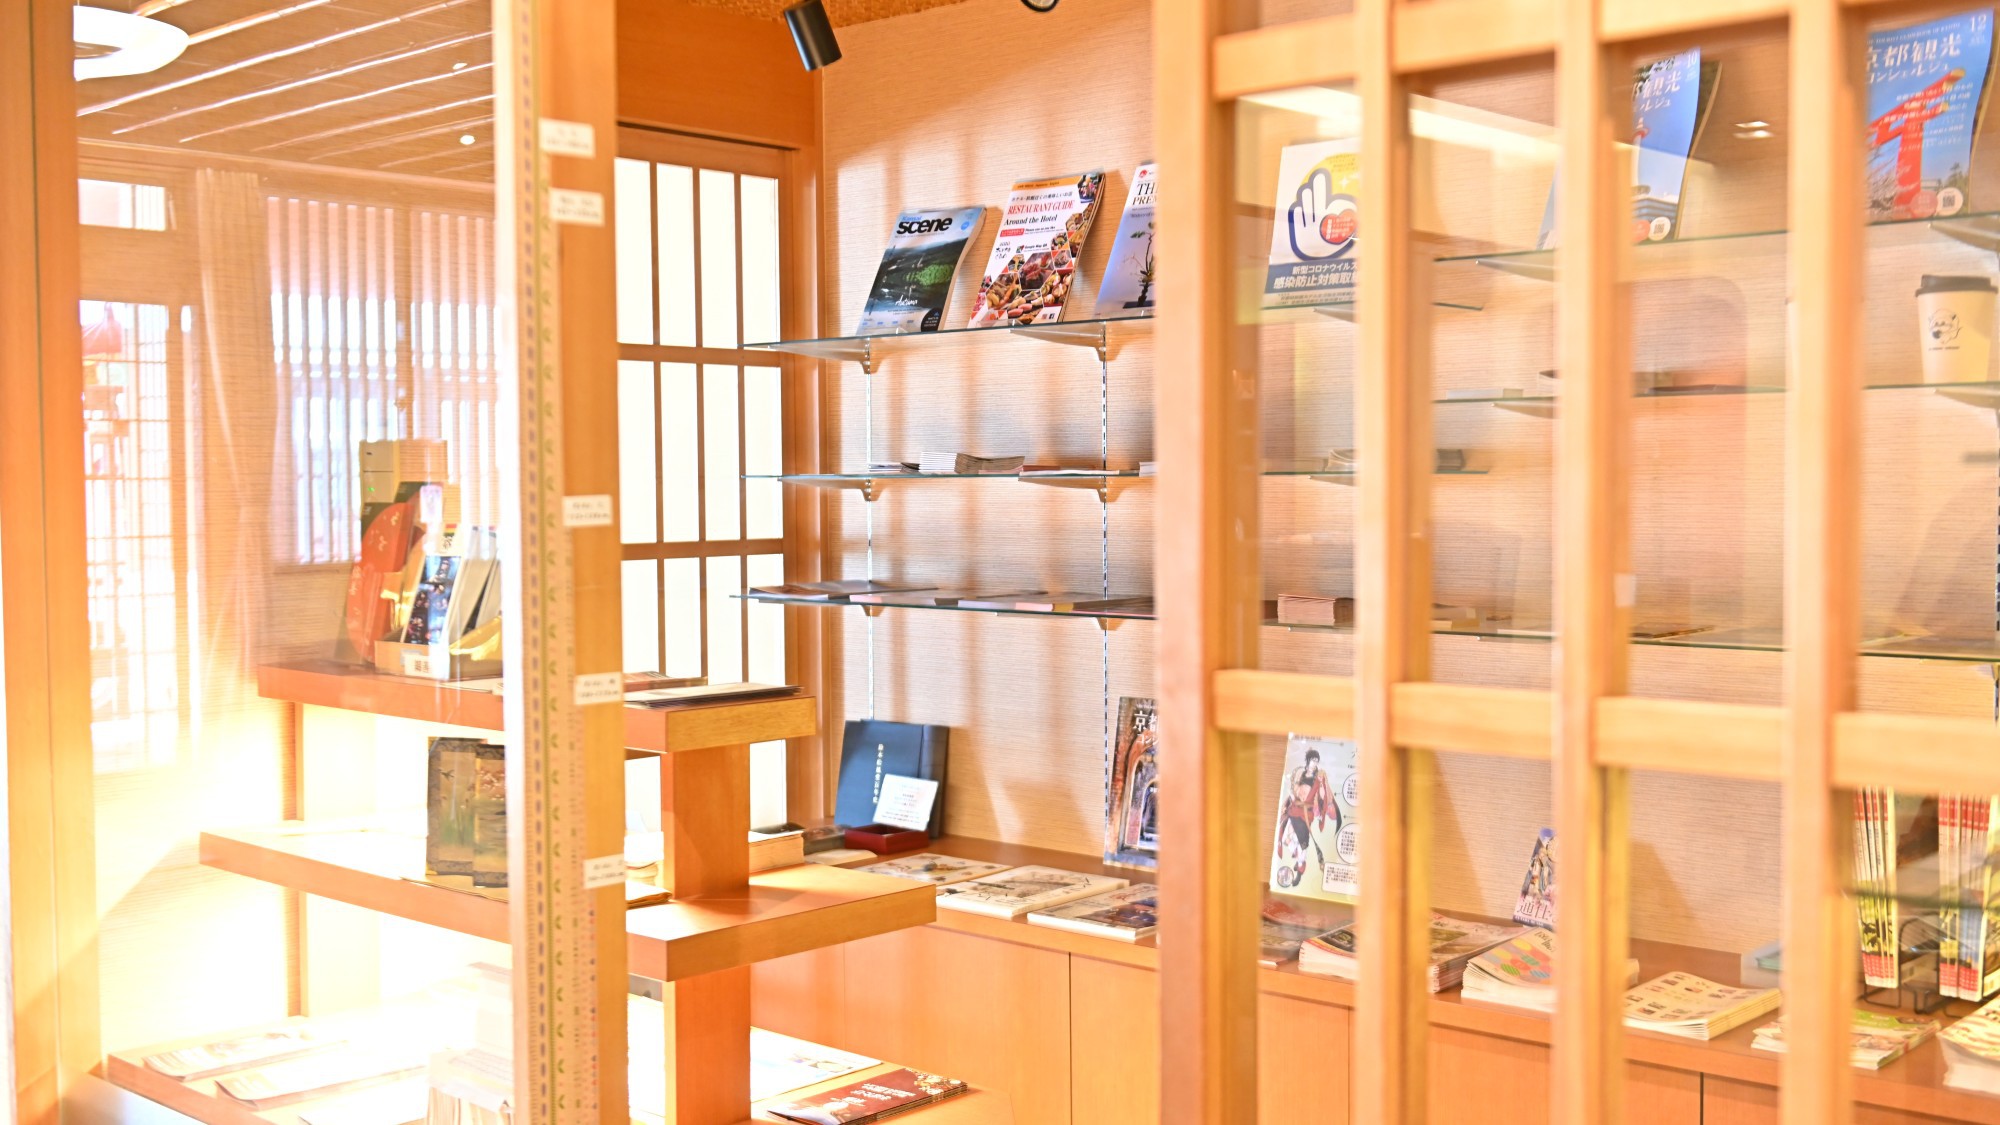 京都観光ライブラリ／スタッフおすすめの京都観光のパンフレットや展示会案内を取り揃えています。